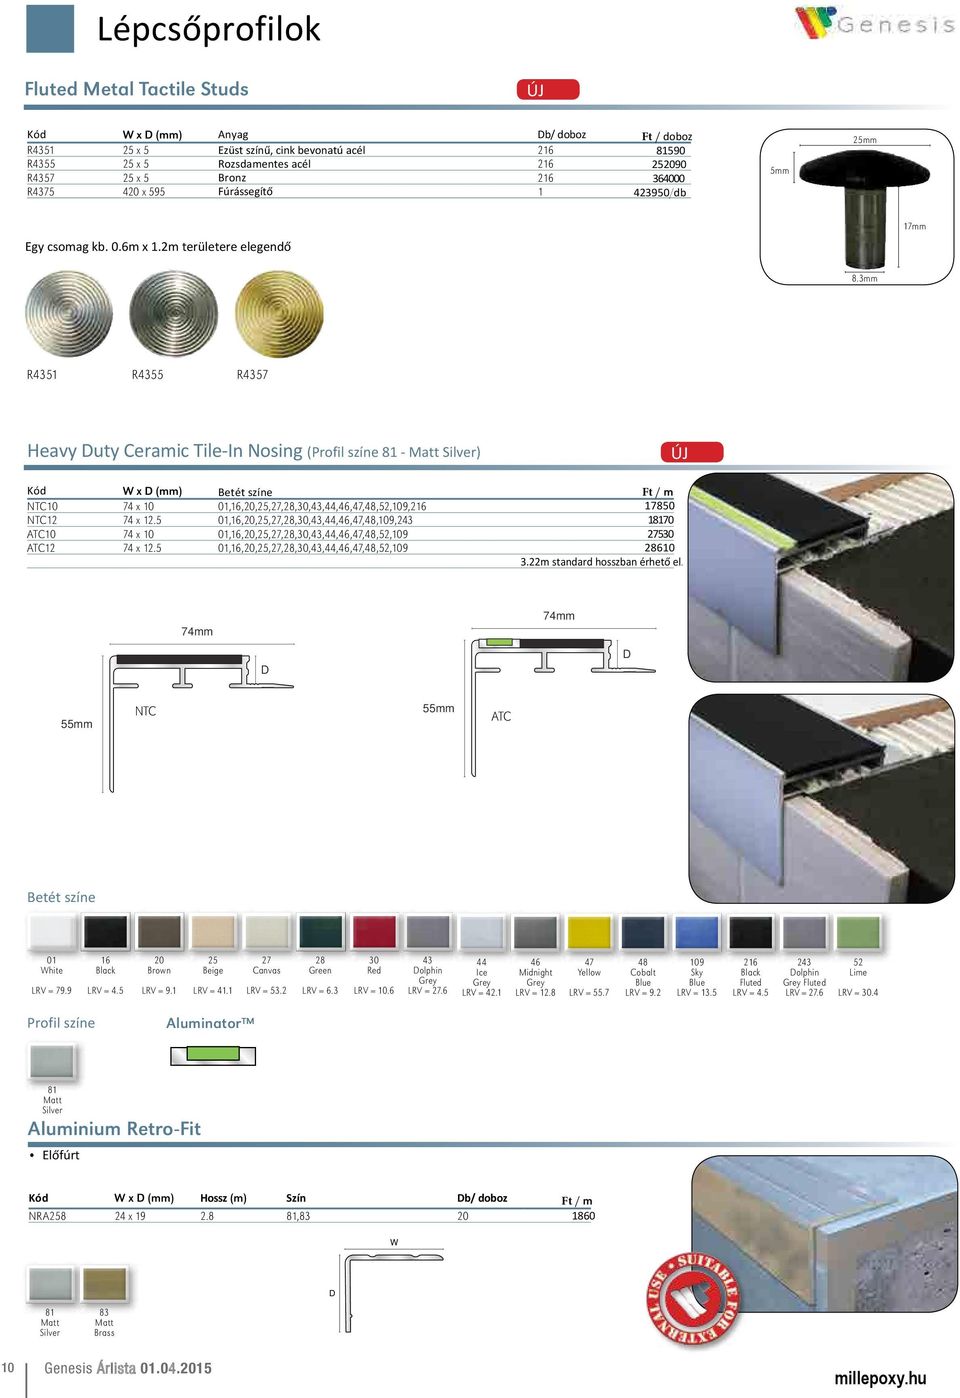 3mm R4351 R4355 R4357 Heavy uty Ceramic Tile-In Nosing (Profil színe - ) Kód x (mm) Betét színe NTC10 74 x 10 01,,20,25,27,28,30,43,44,46,47,48,52,109,2 NTC12 74 x 12.